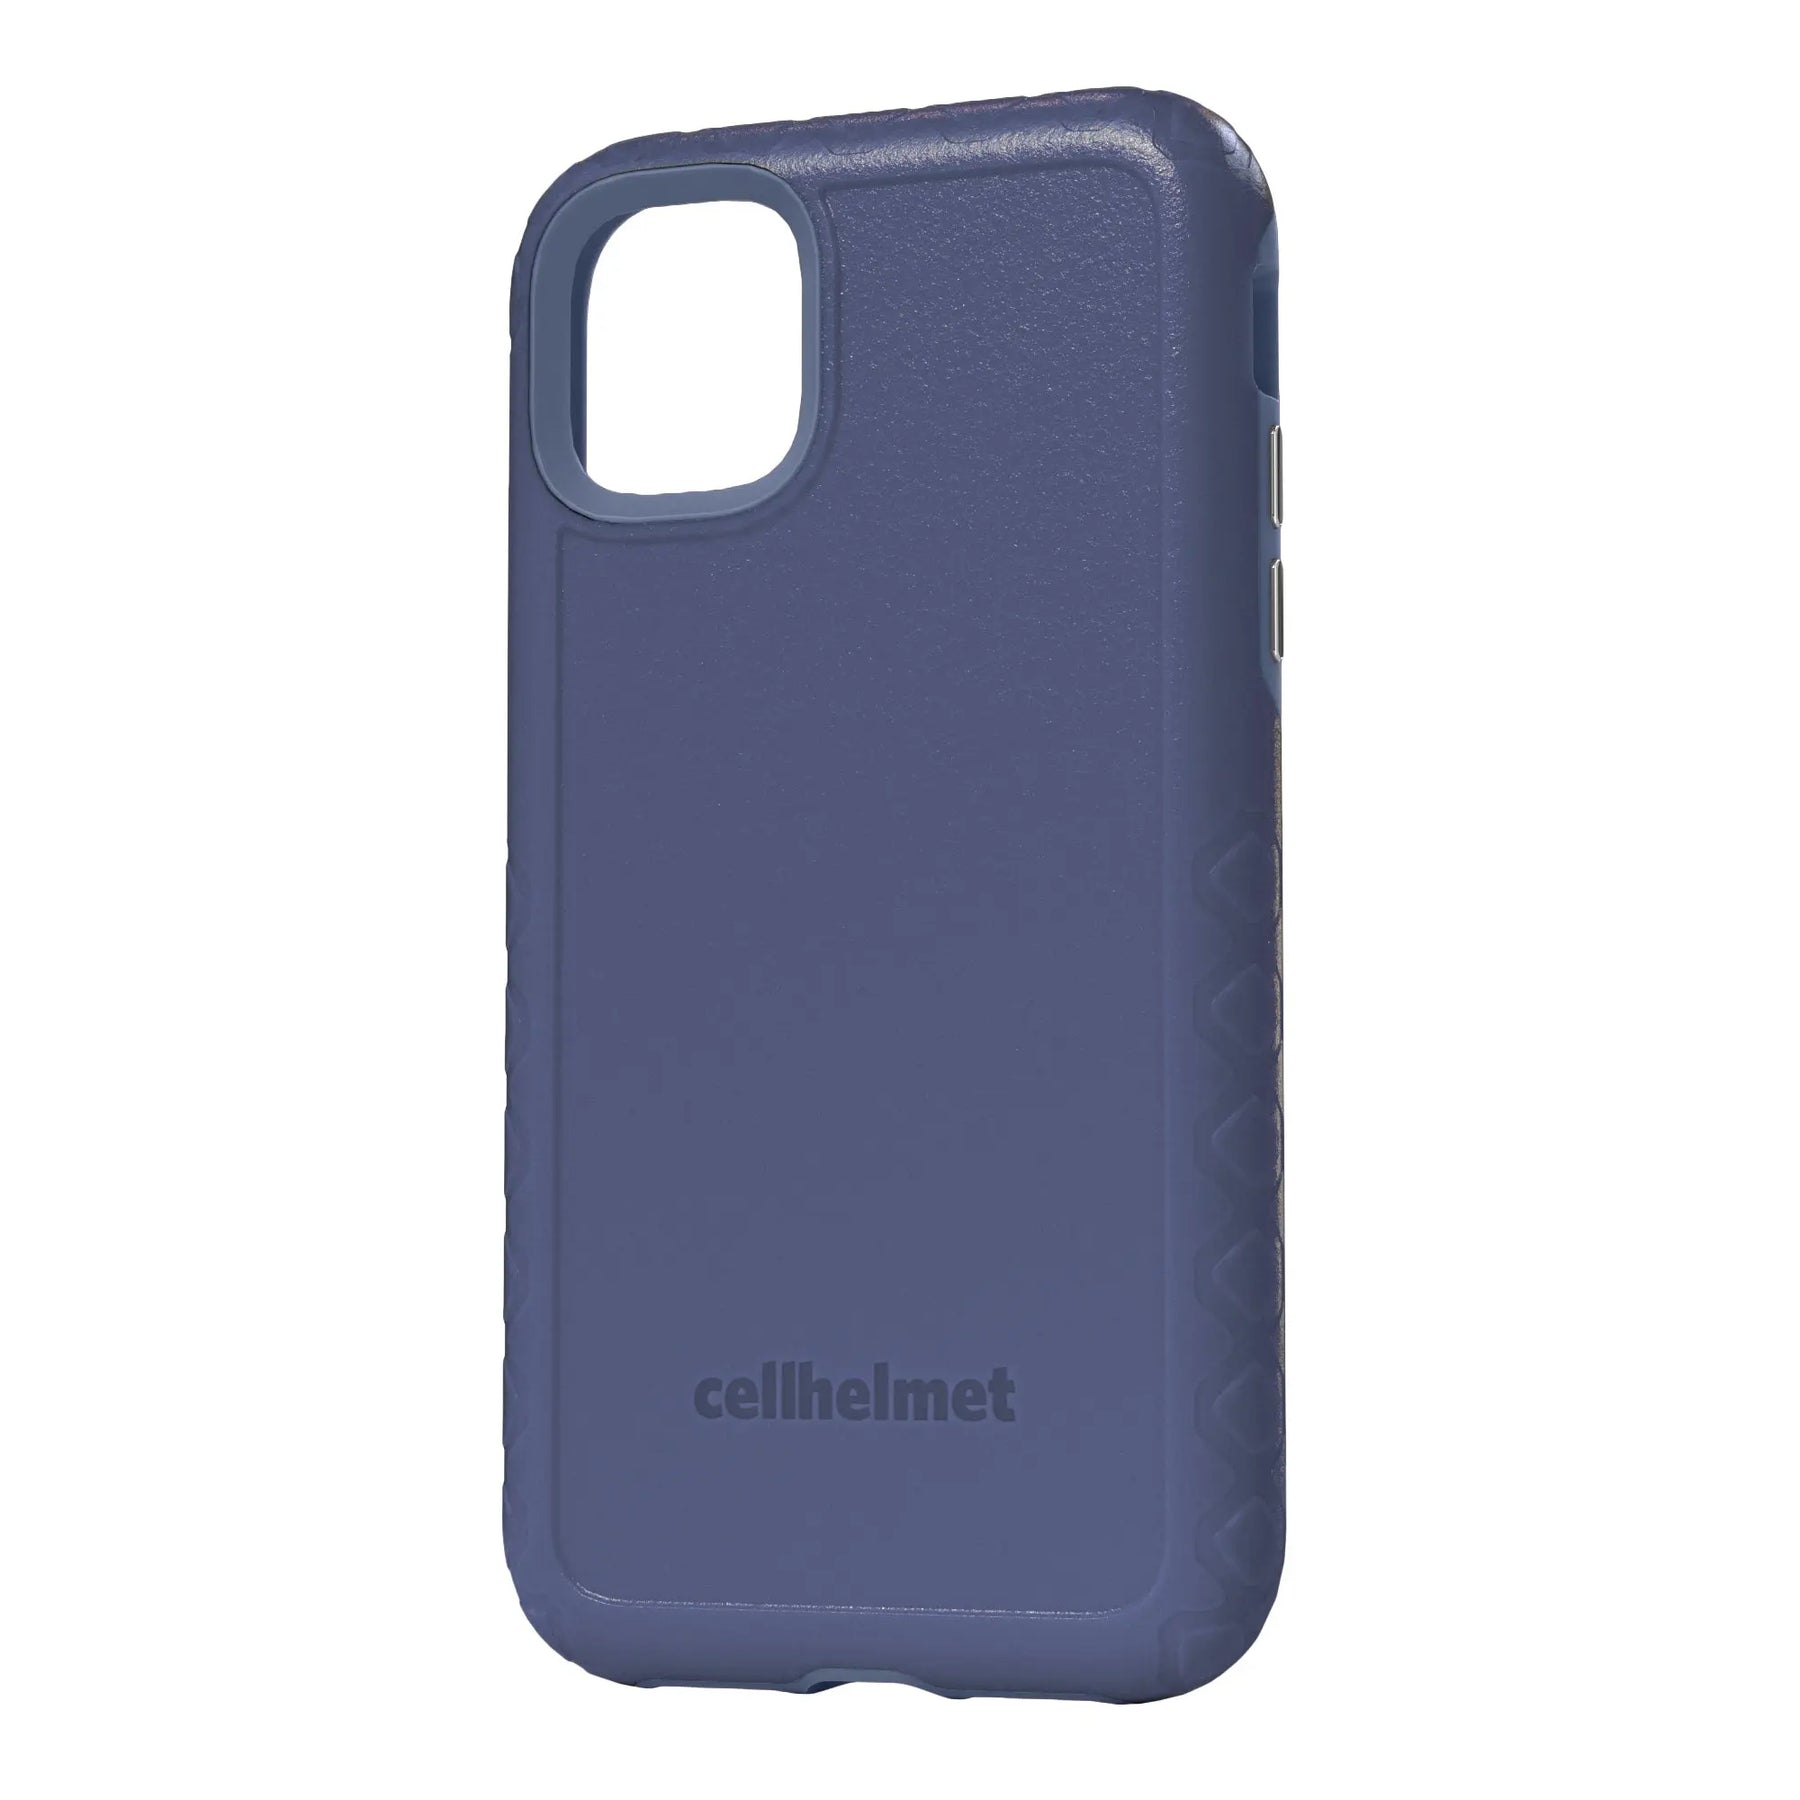 cellhelmet Blue Custom Case for iPhone 11 Pro Max